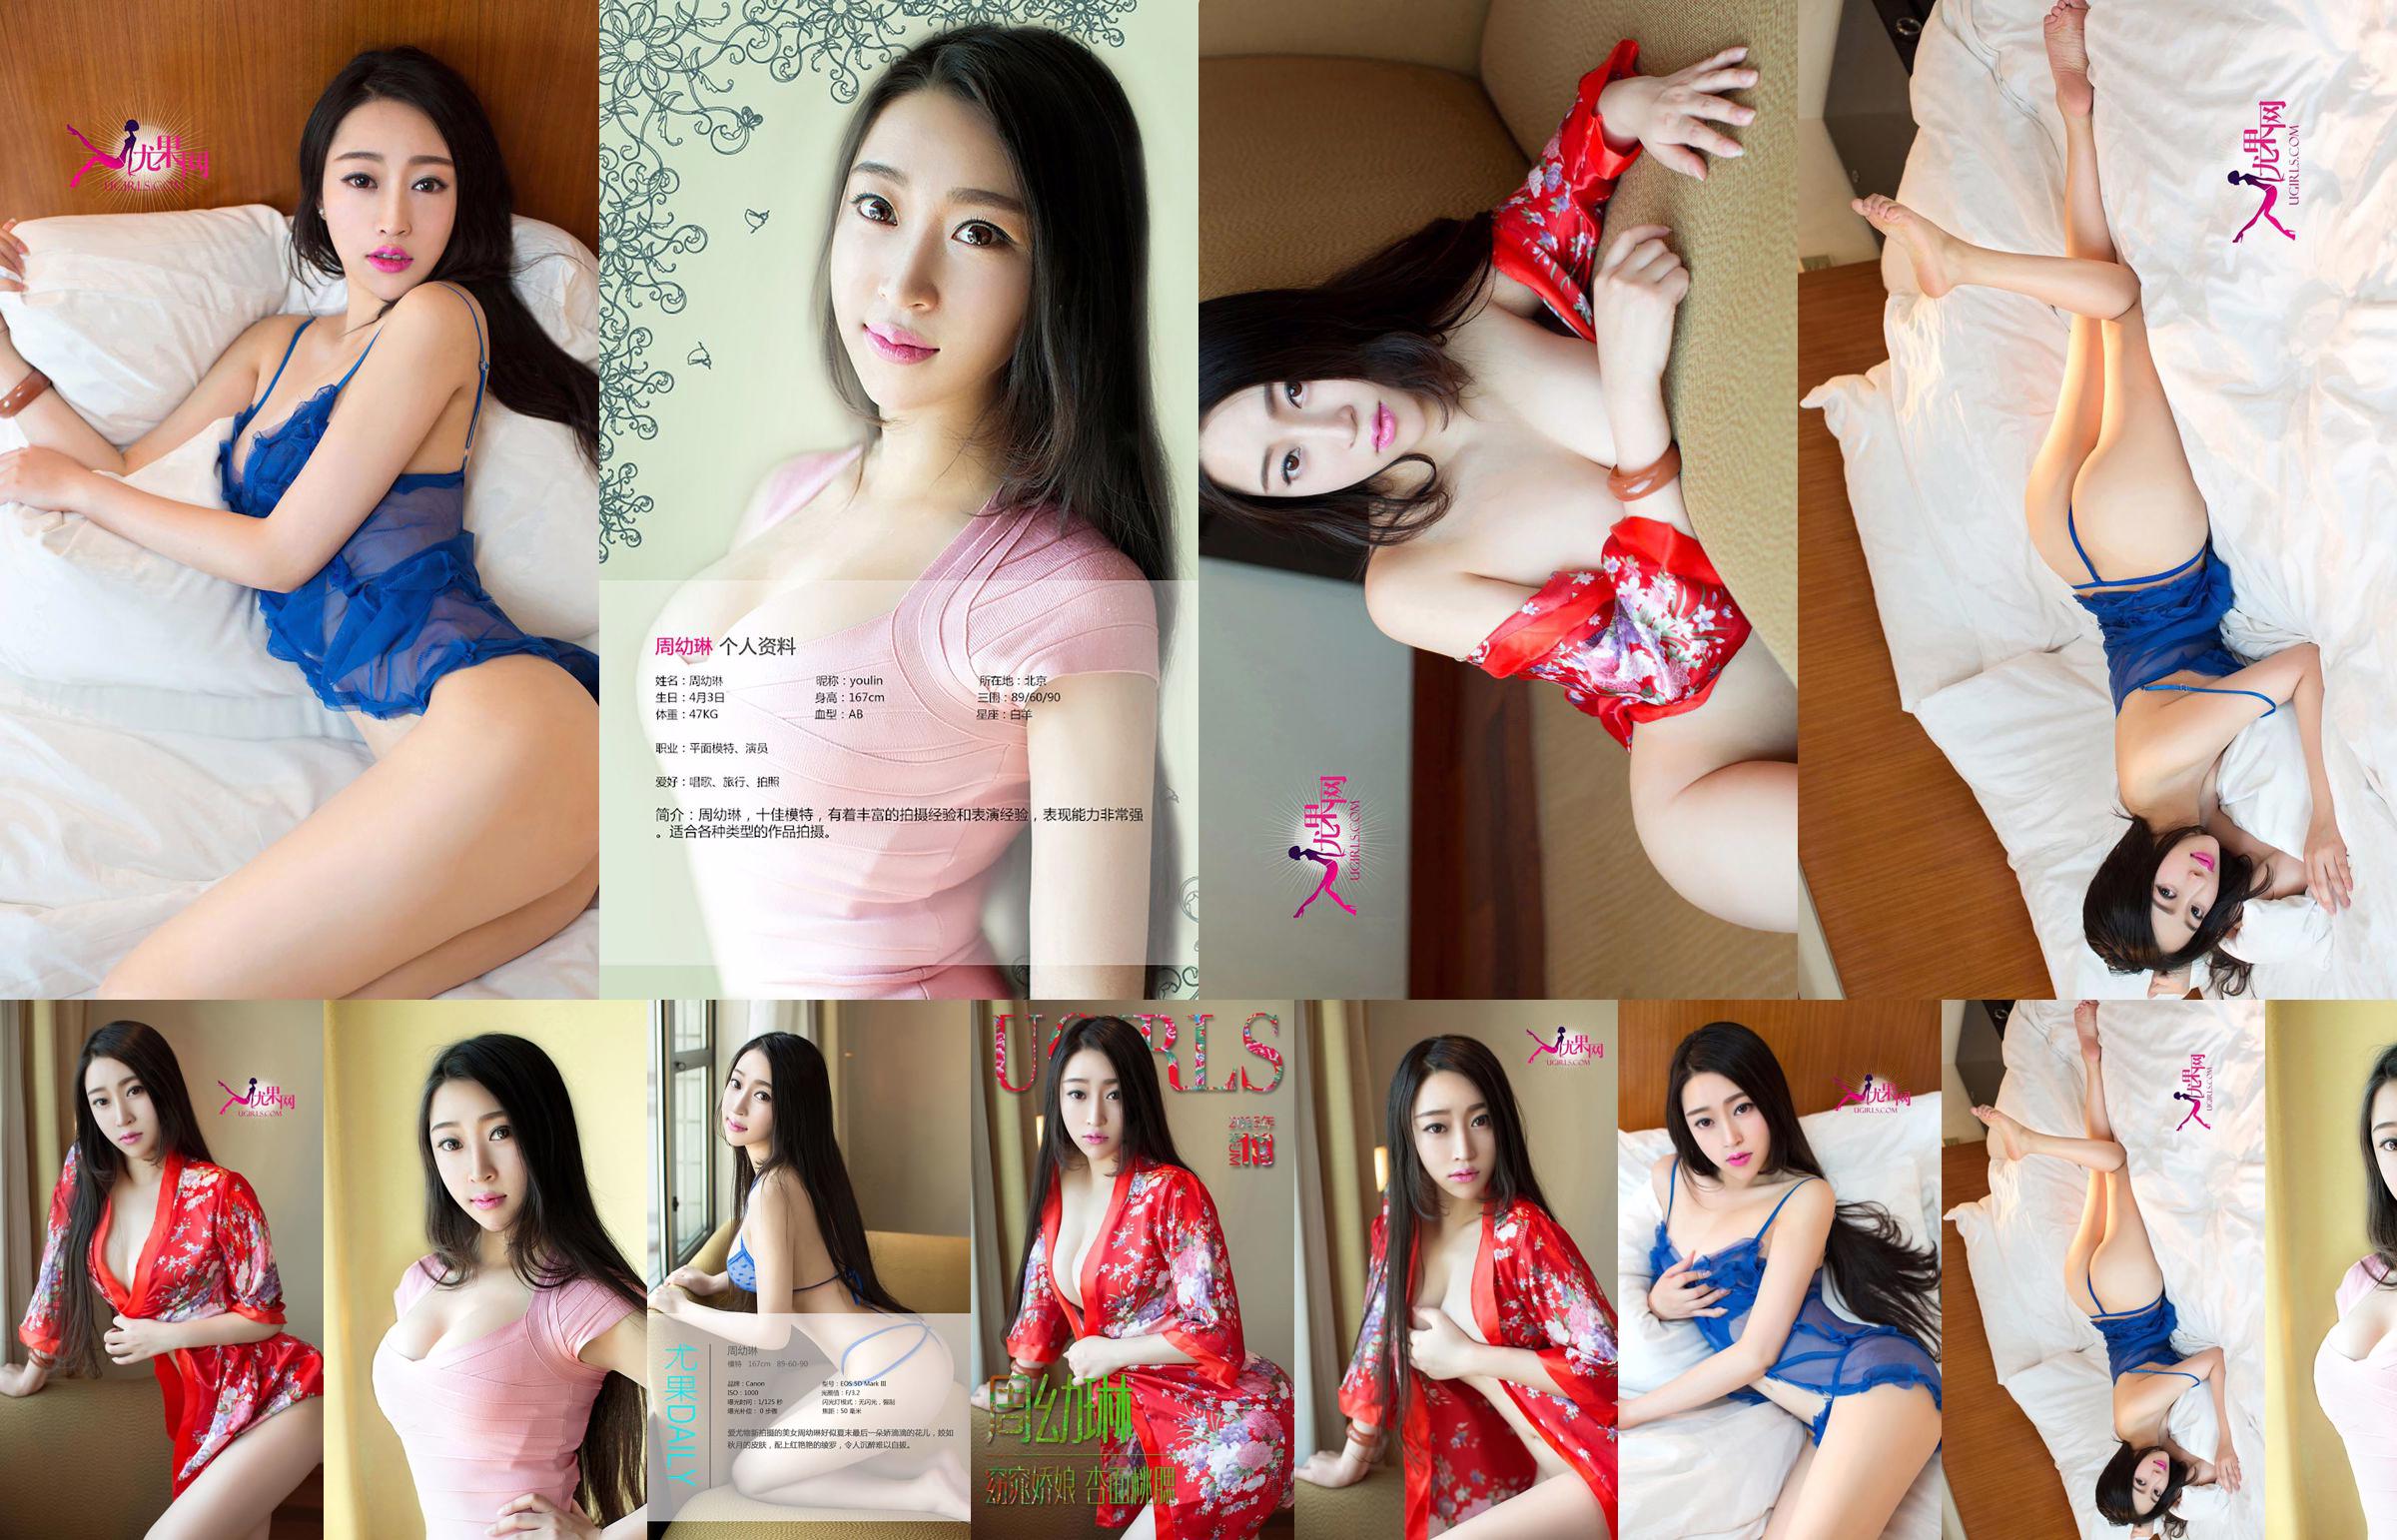 Zhou Youlin "Một cô gái xinh đẹp với khuôn mặt hoa mai và đôi má đào" [Love Youwu Ugirls] No.113 No.e458f7 Trang 1